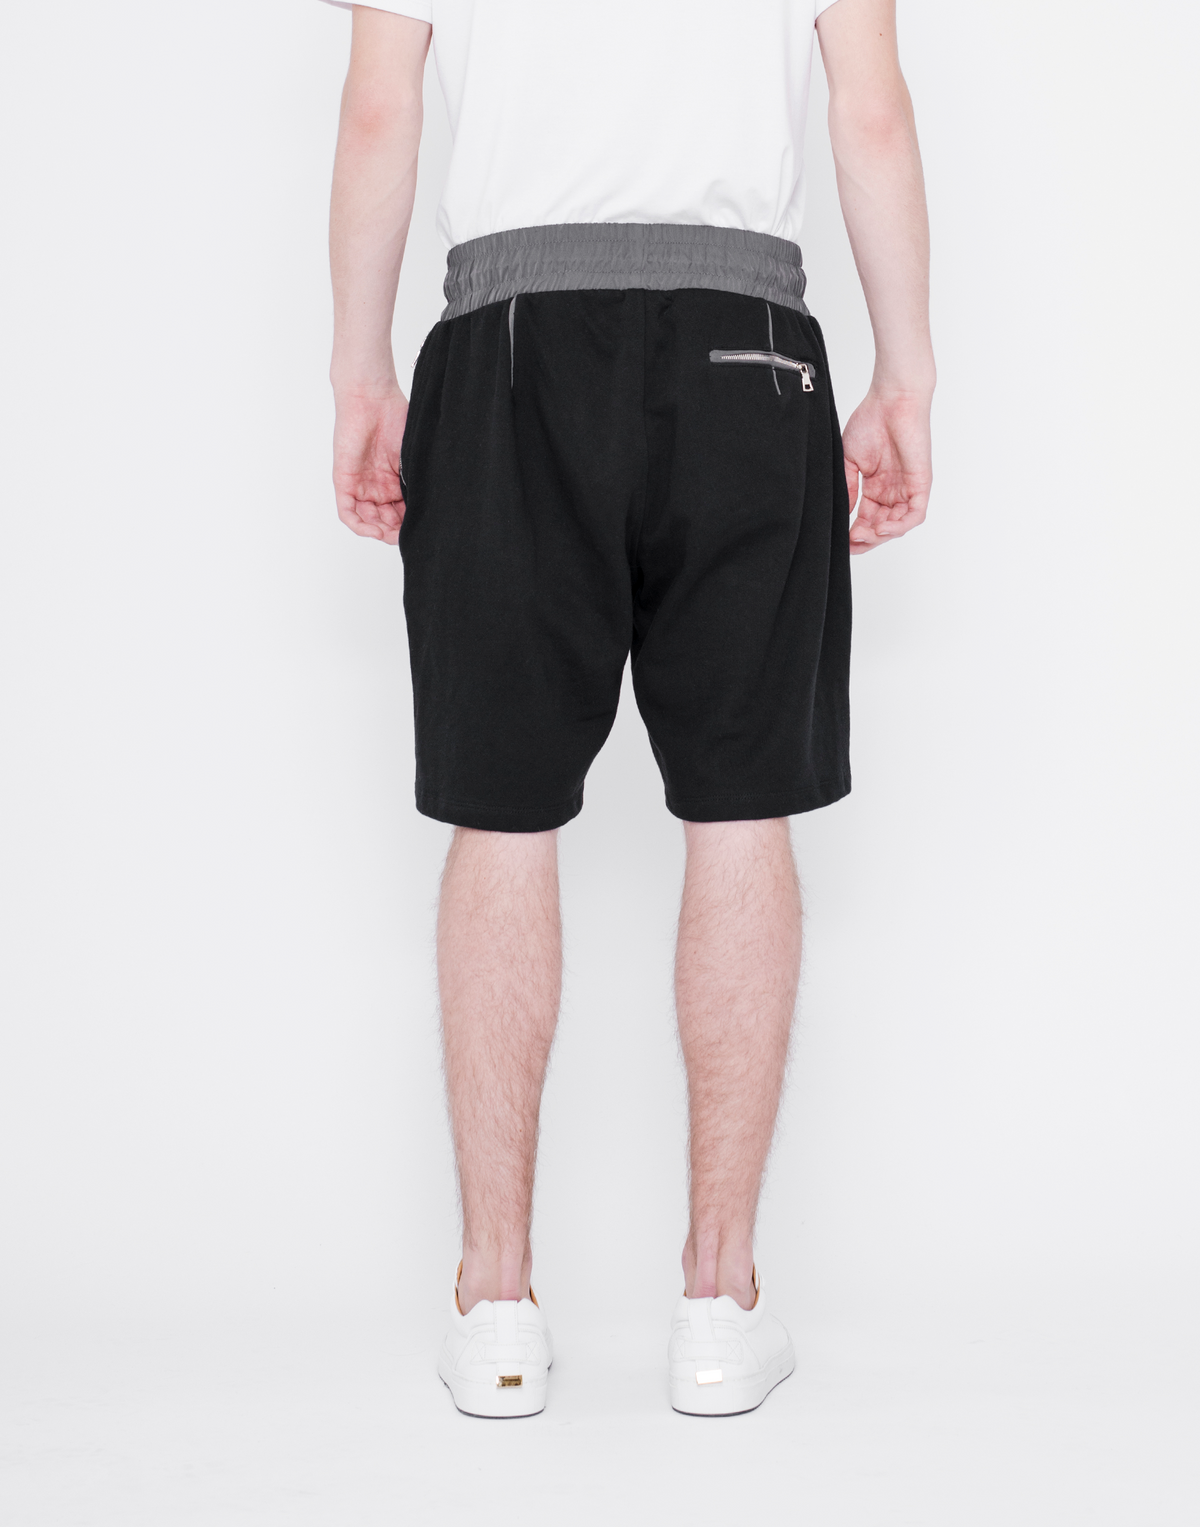 Mercer Shorts - BLACK